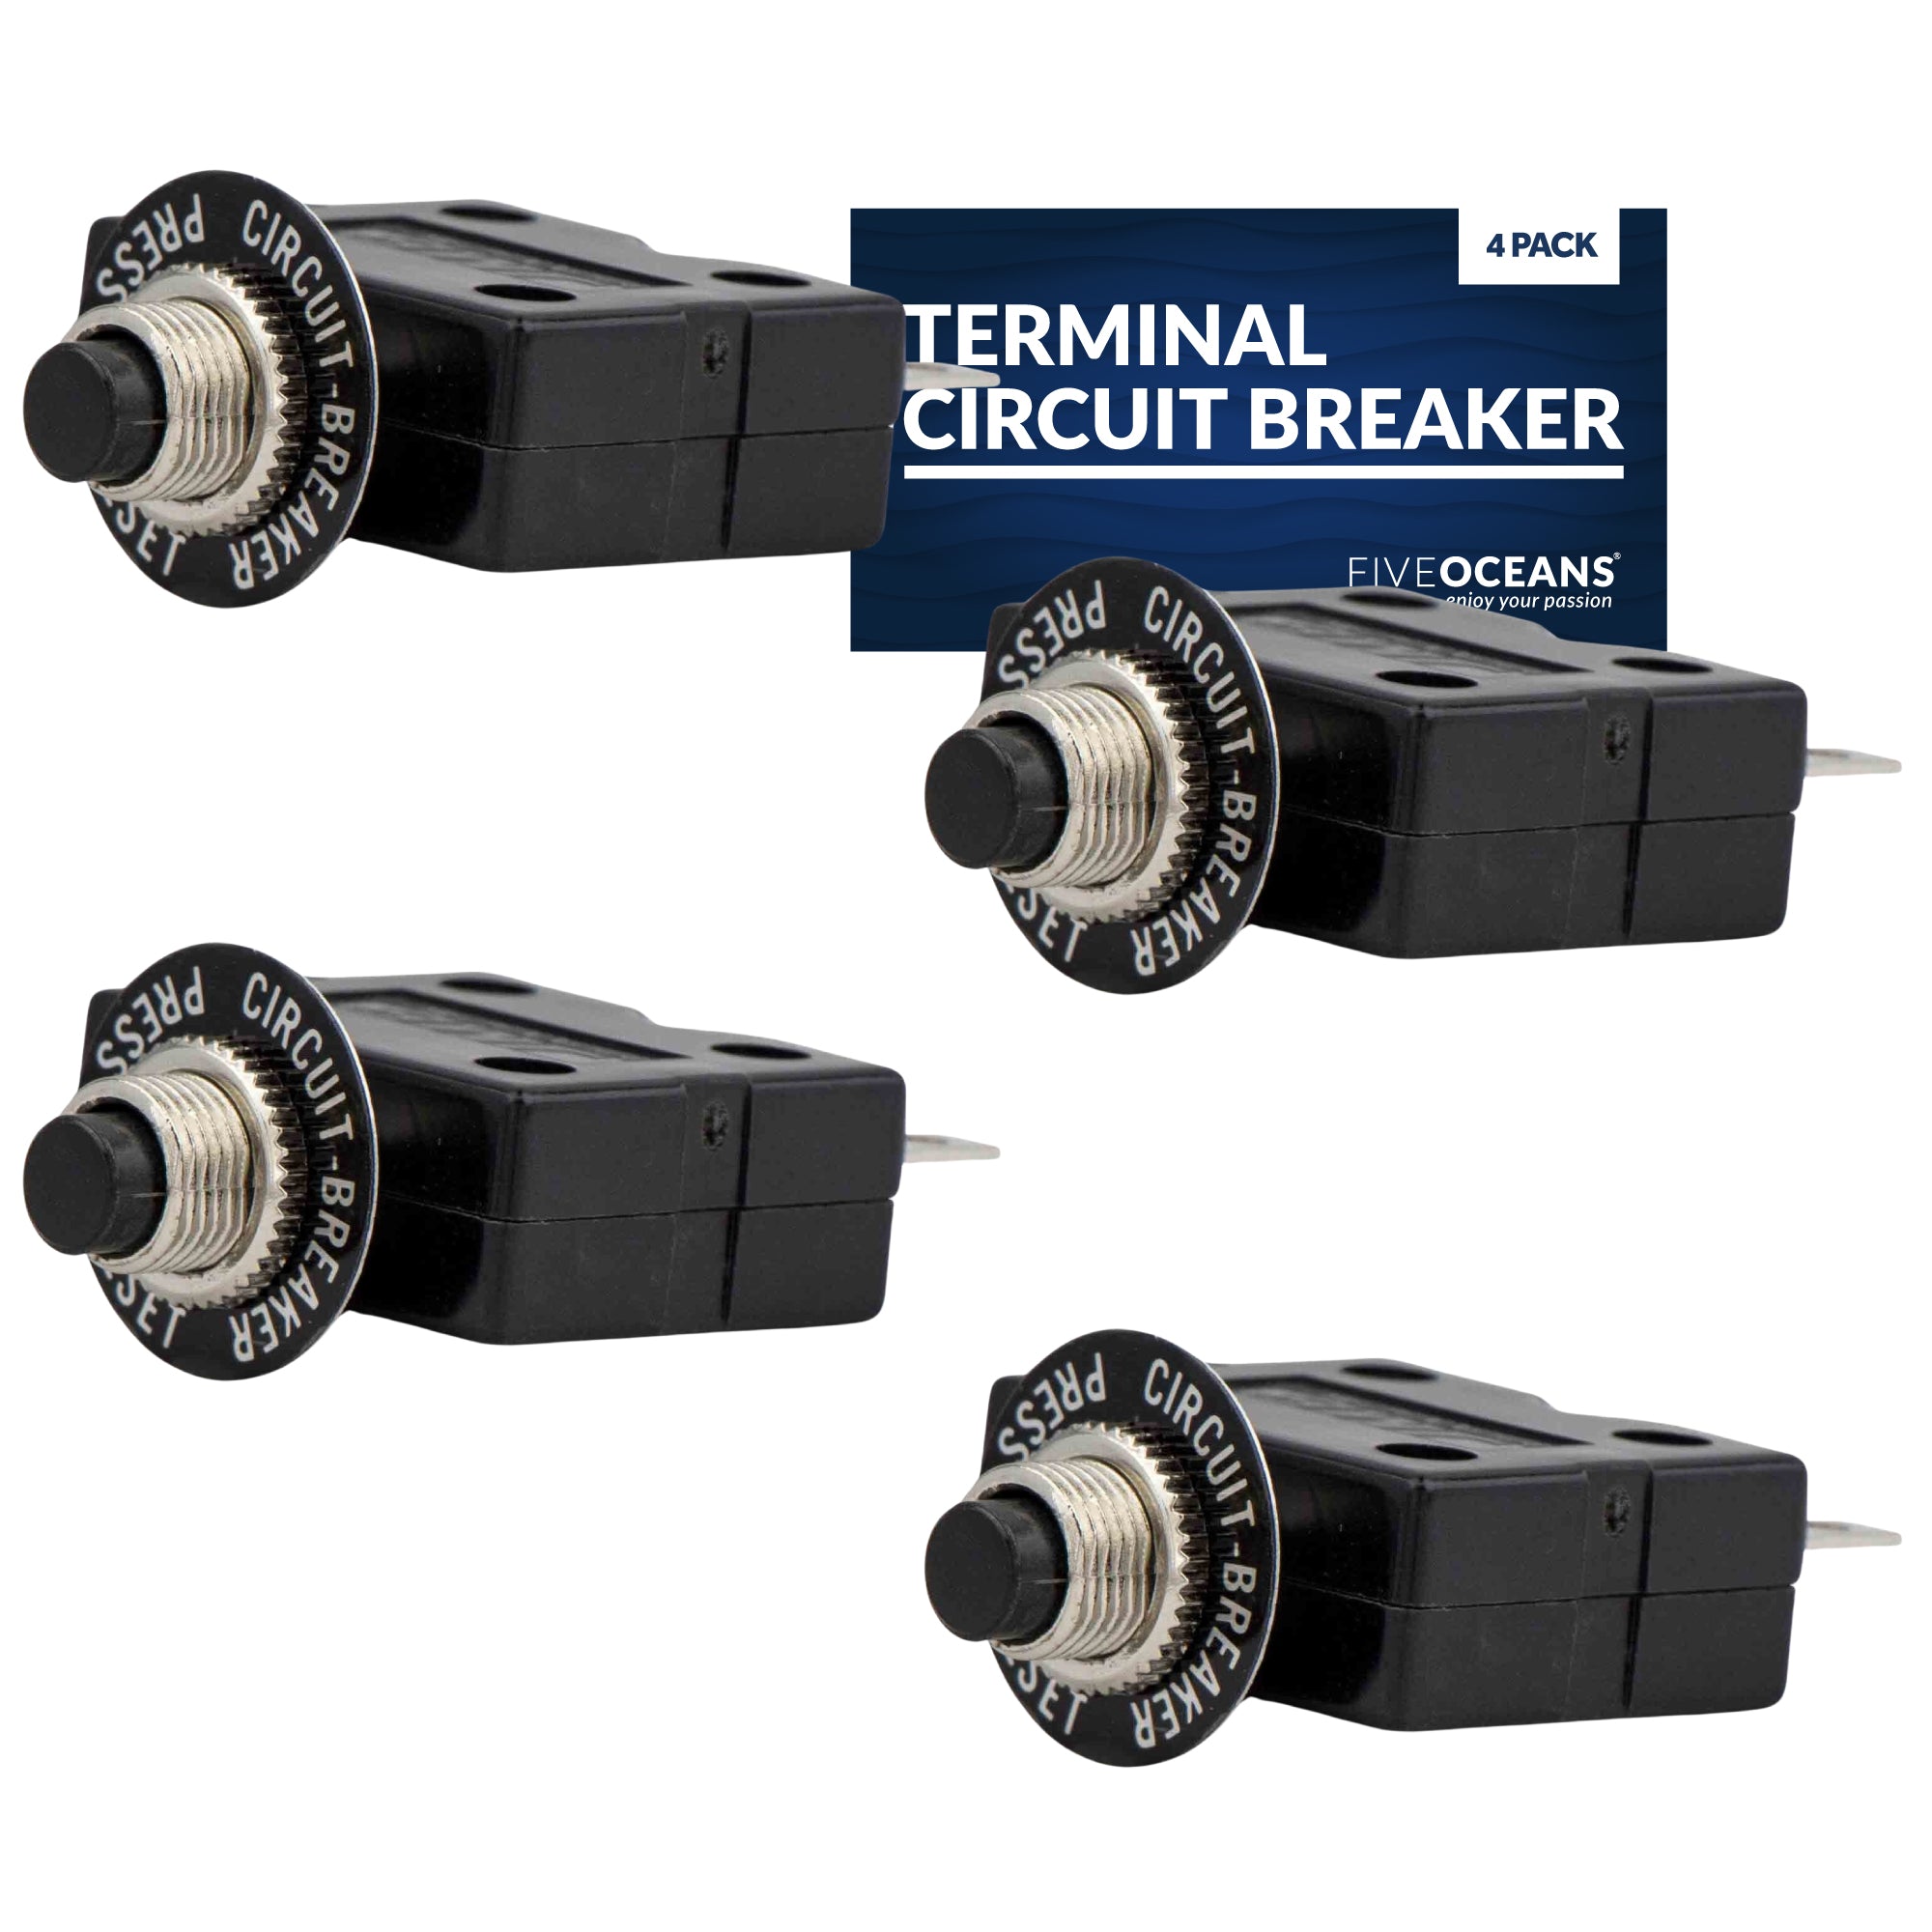 Terminal Circuit Breaker, 15 Amp 4-Pack - FO1432-M4